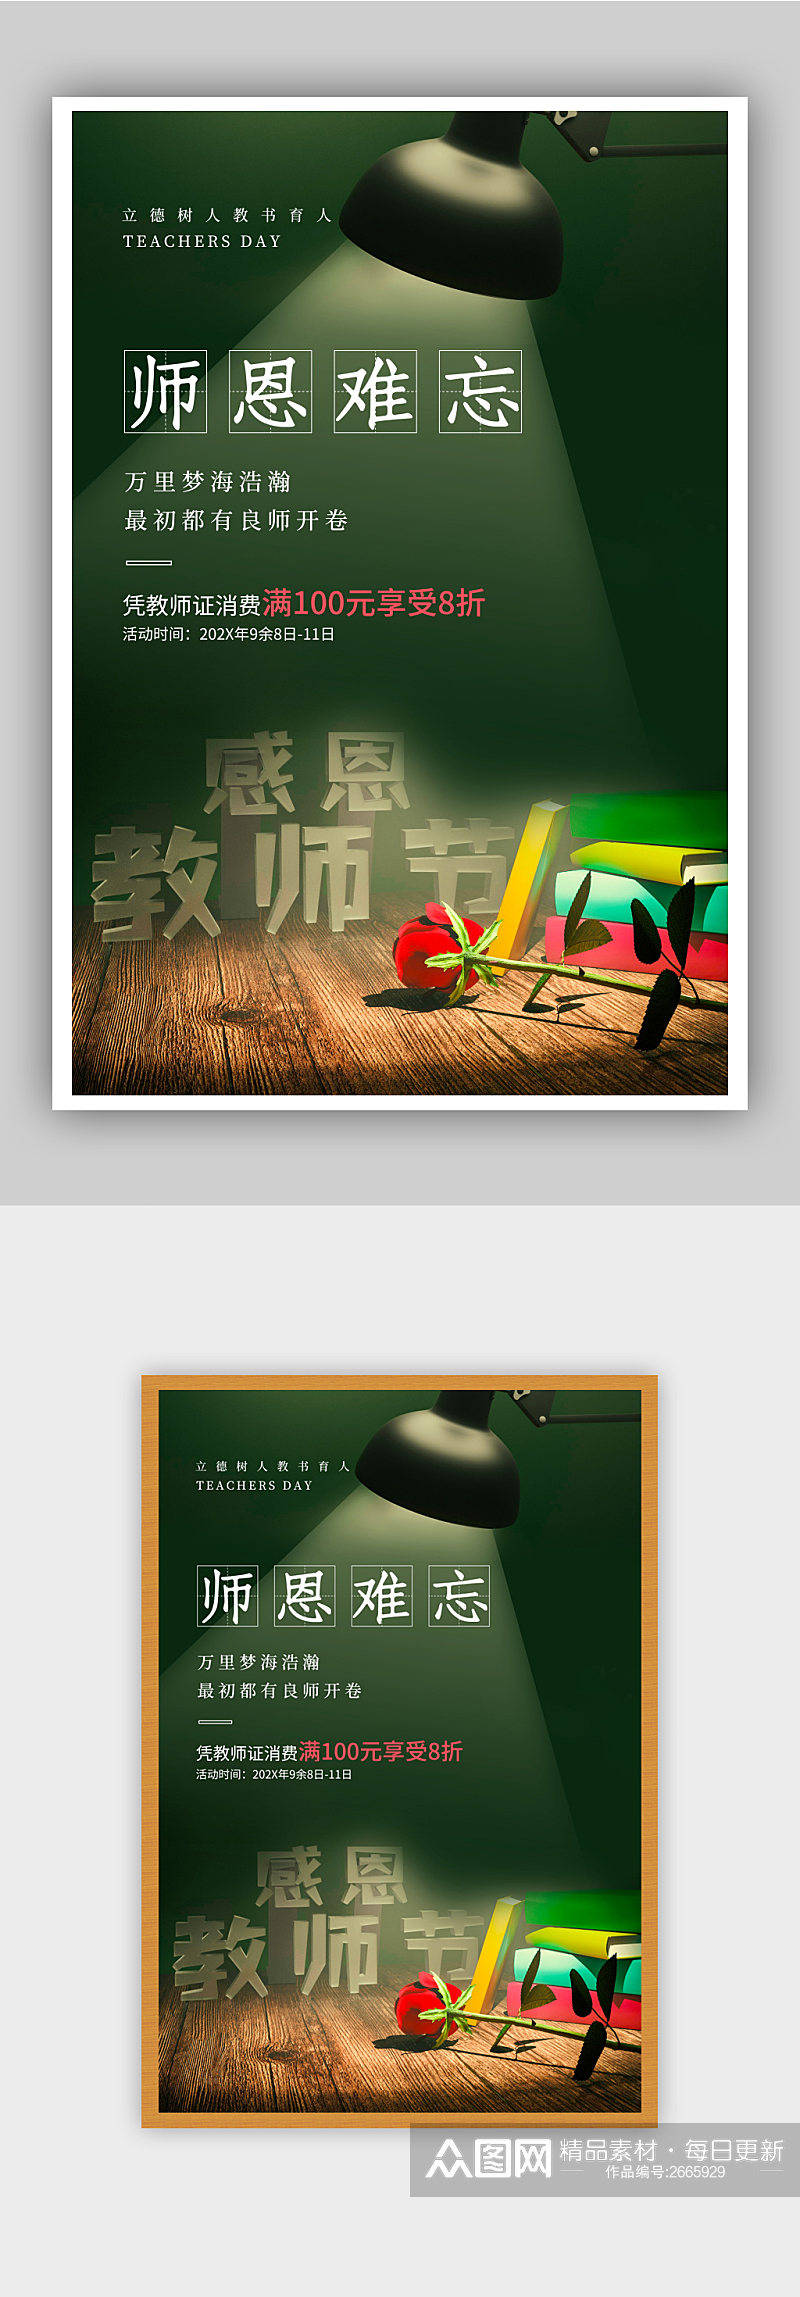 081692绿色感恩教师节促销海报素材